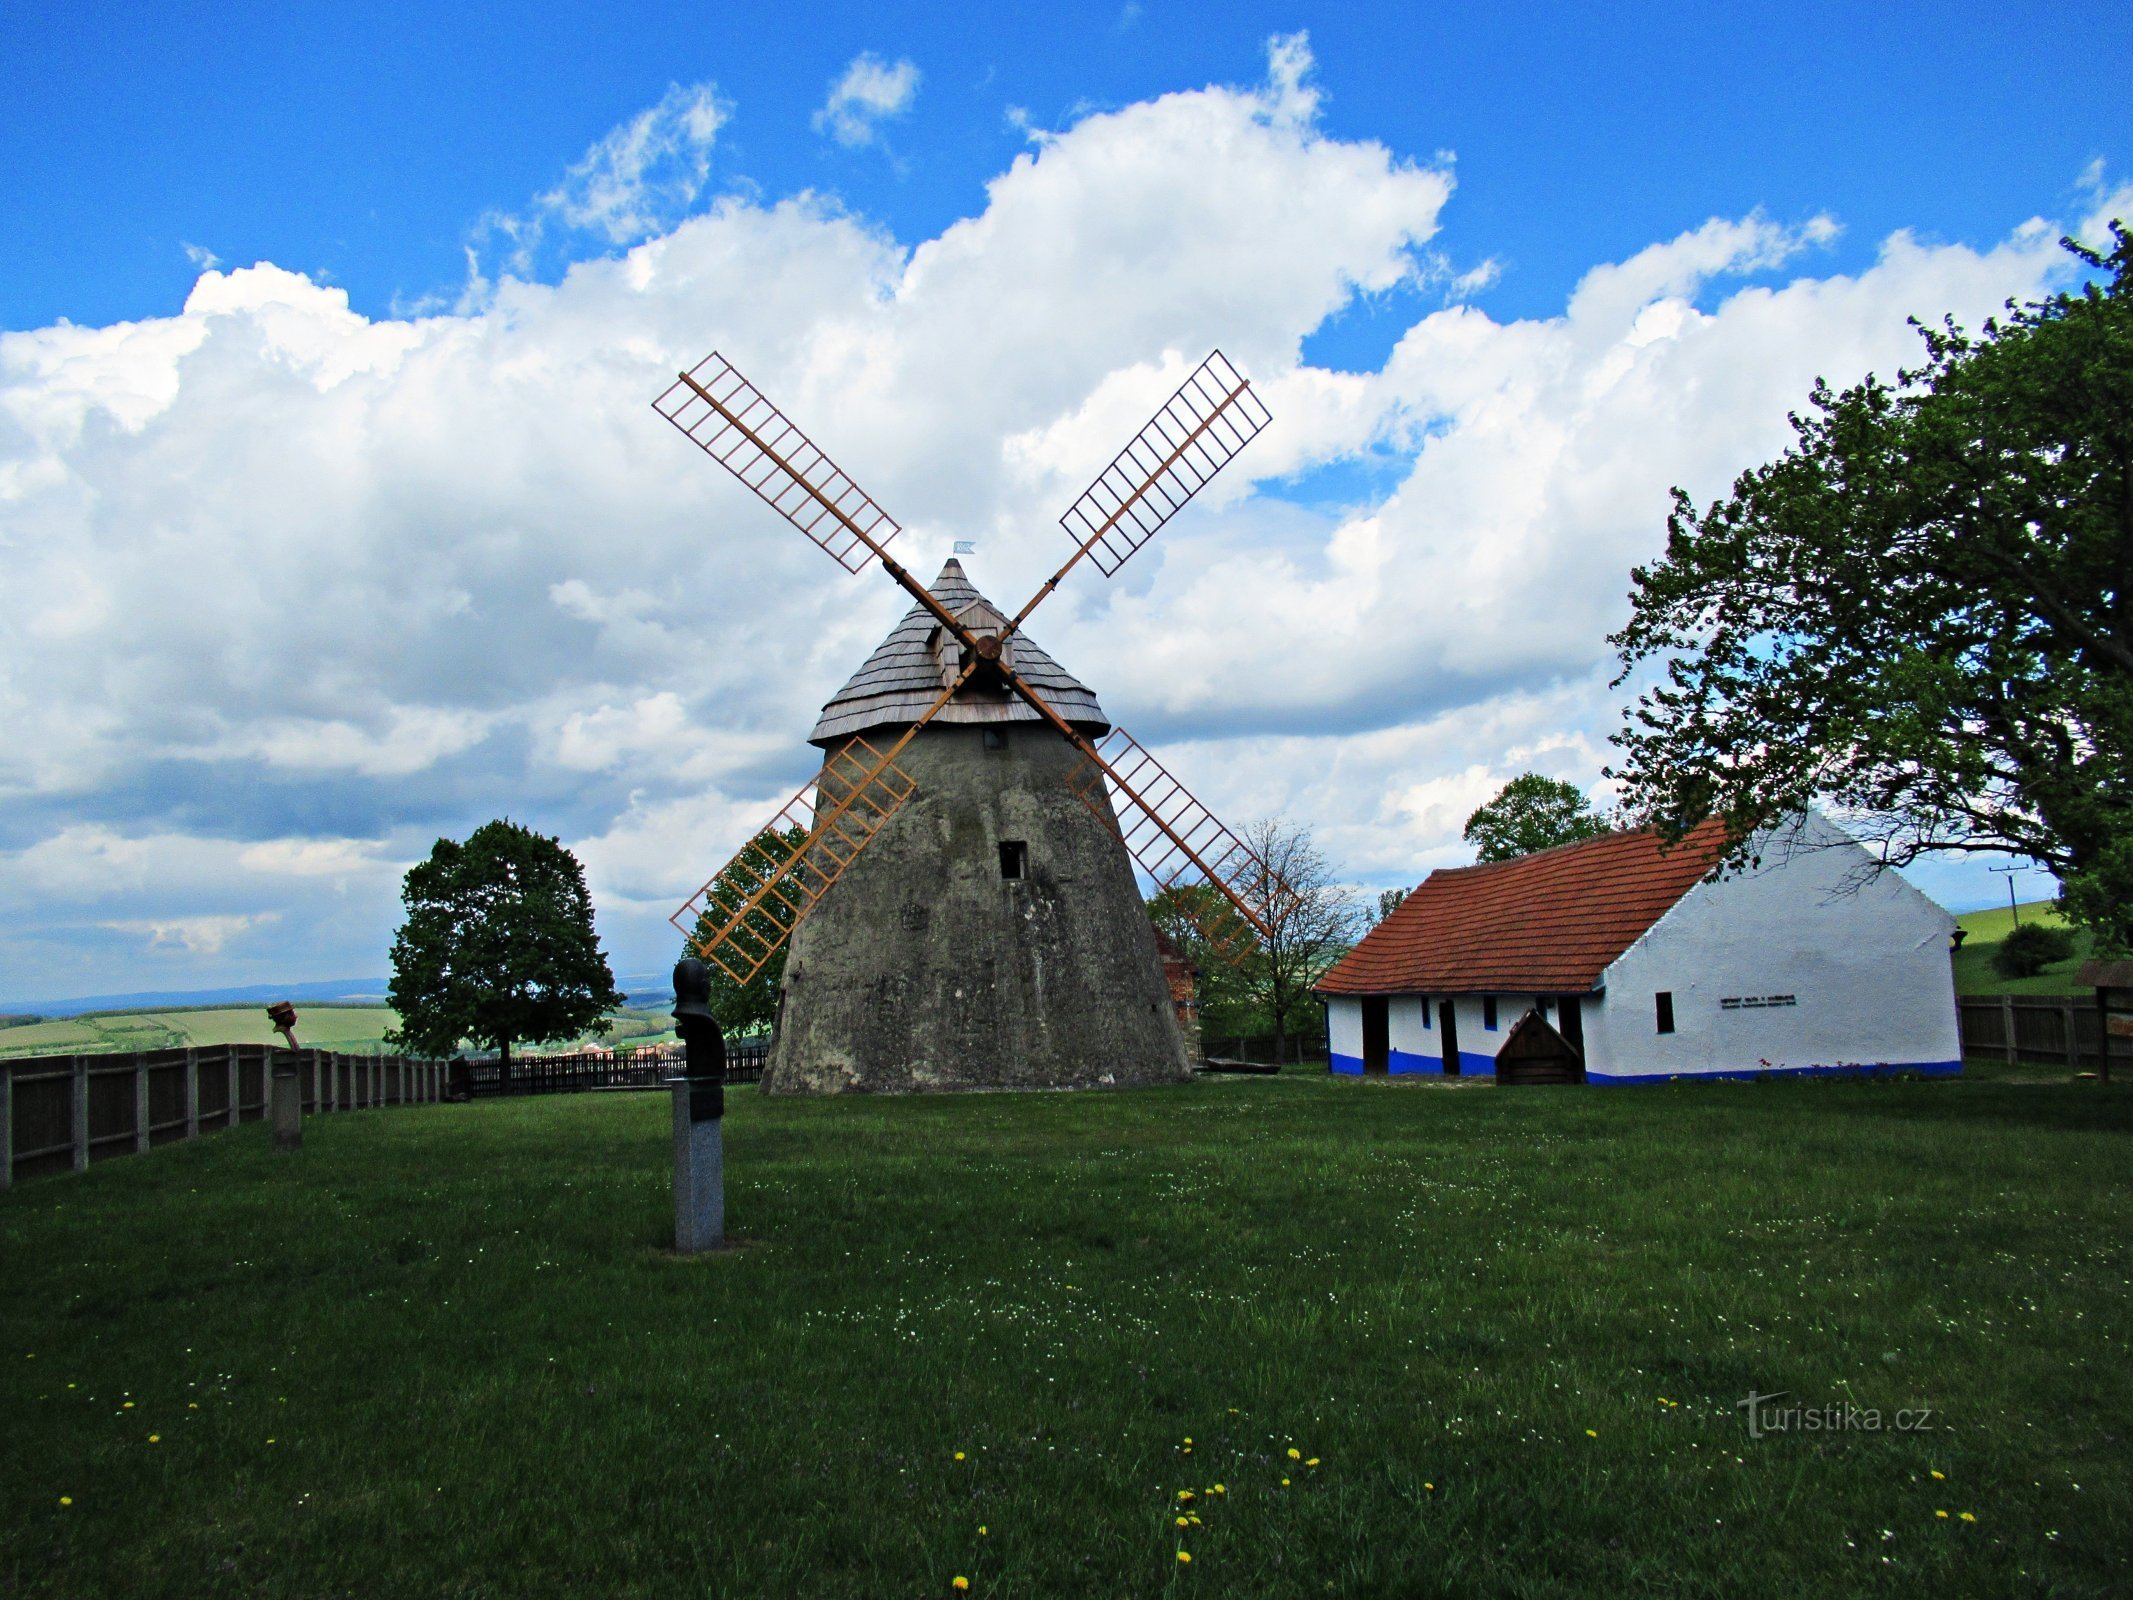 Площадь ветряной мельницы над деревней Кужелов в Словацко